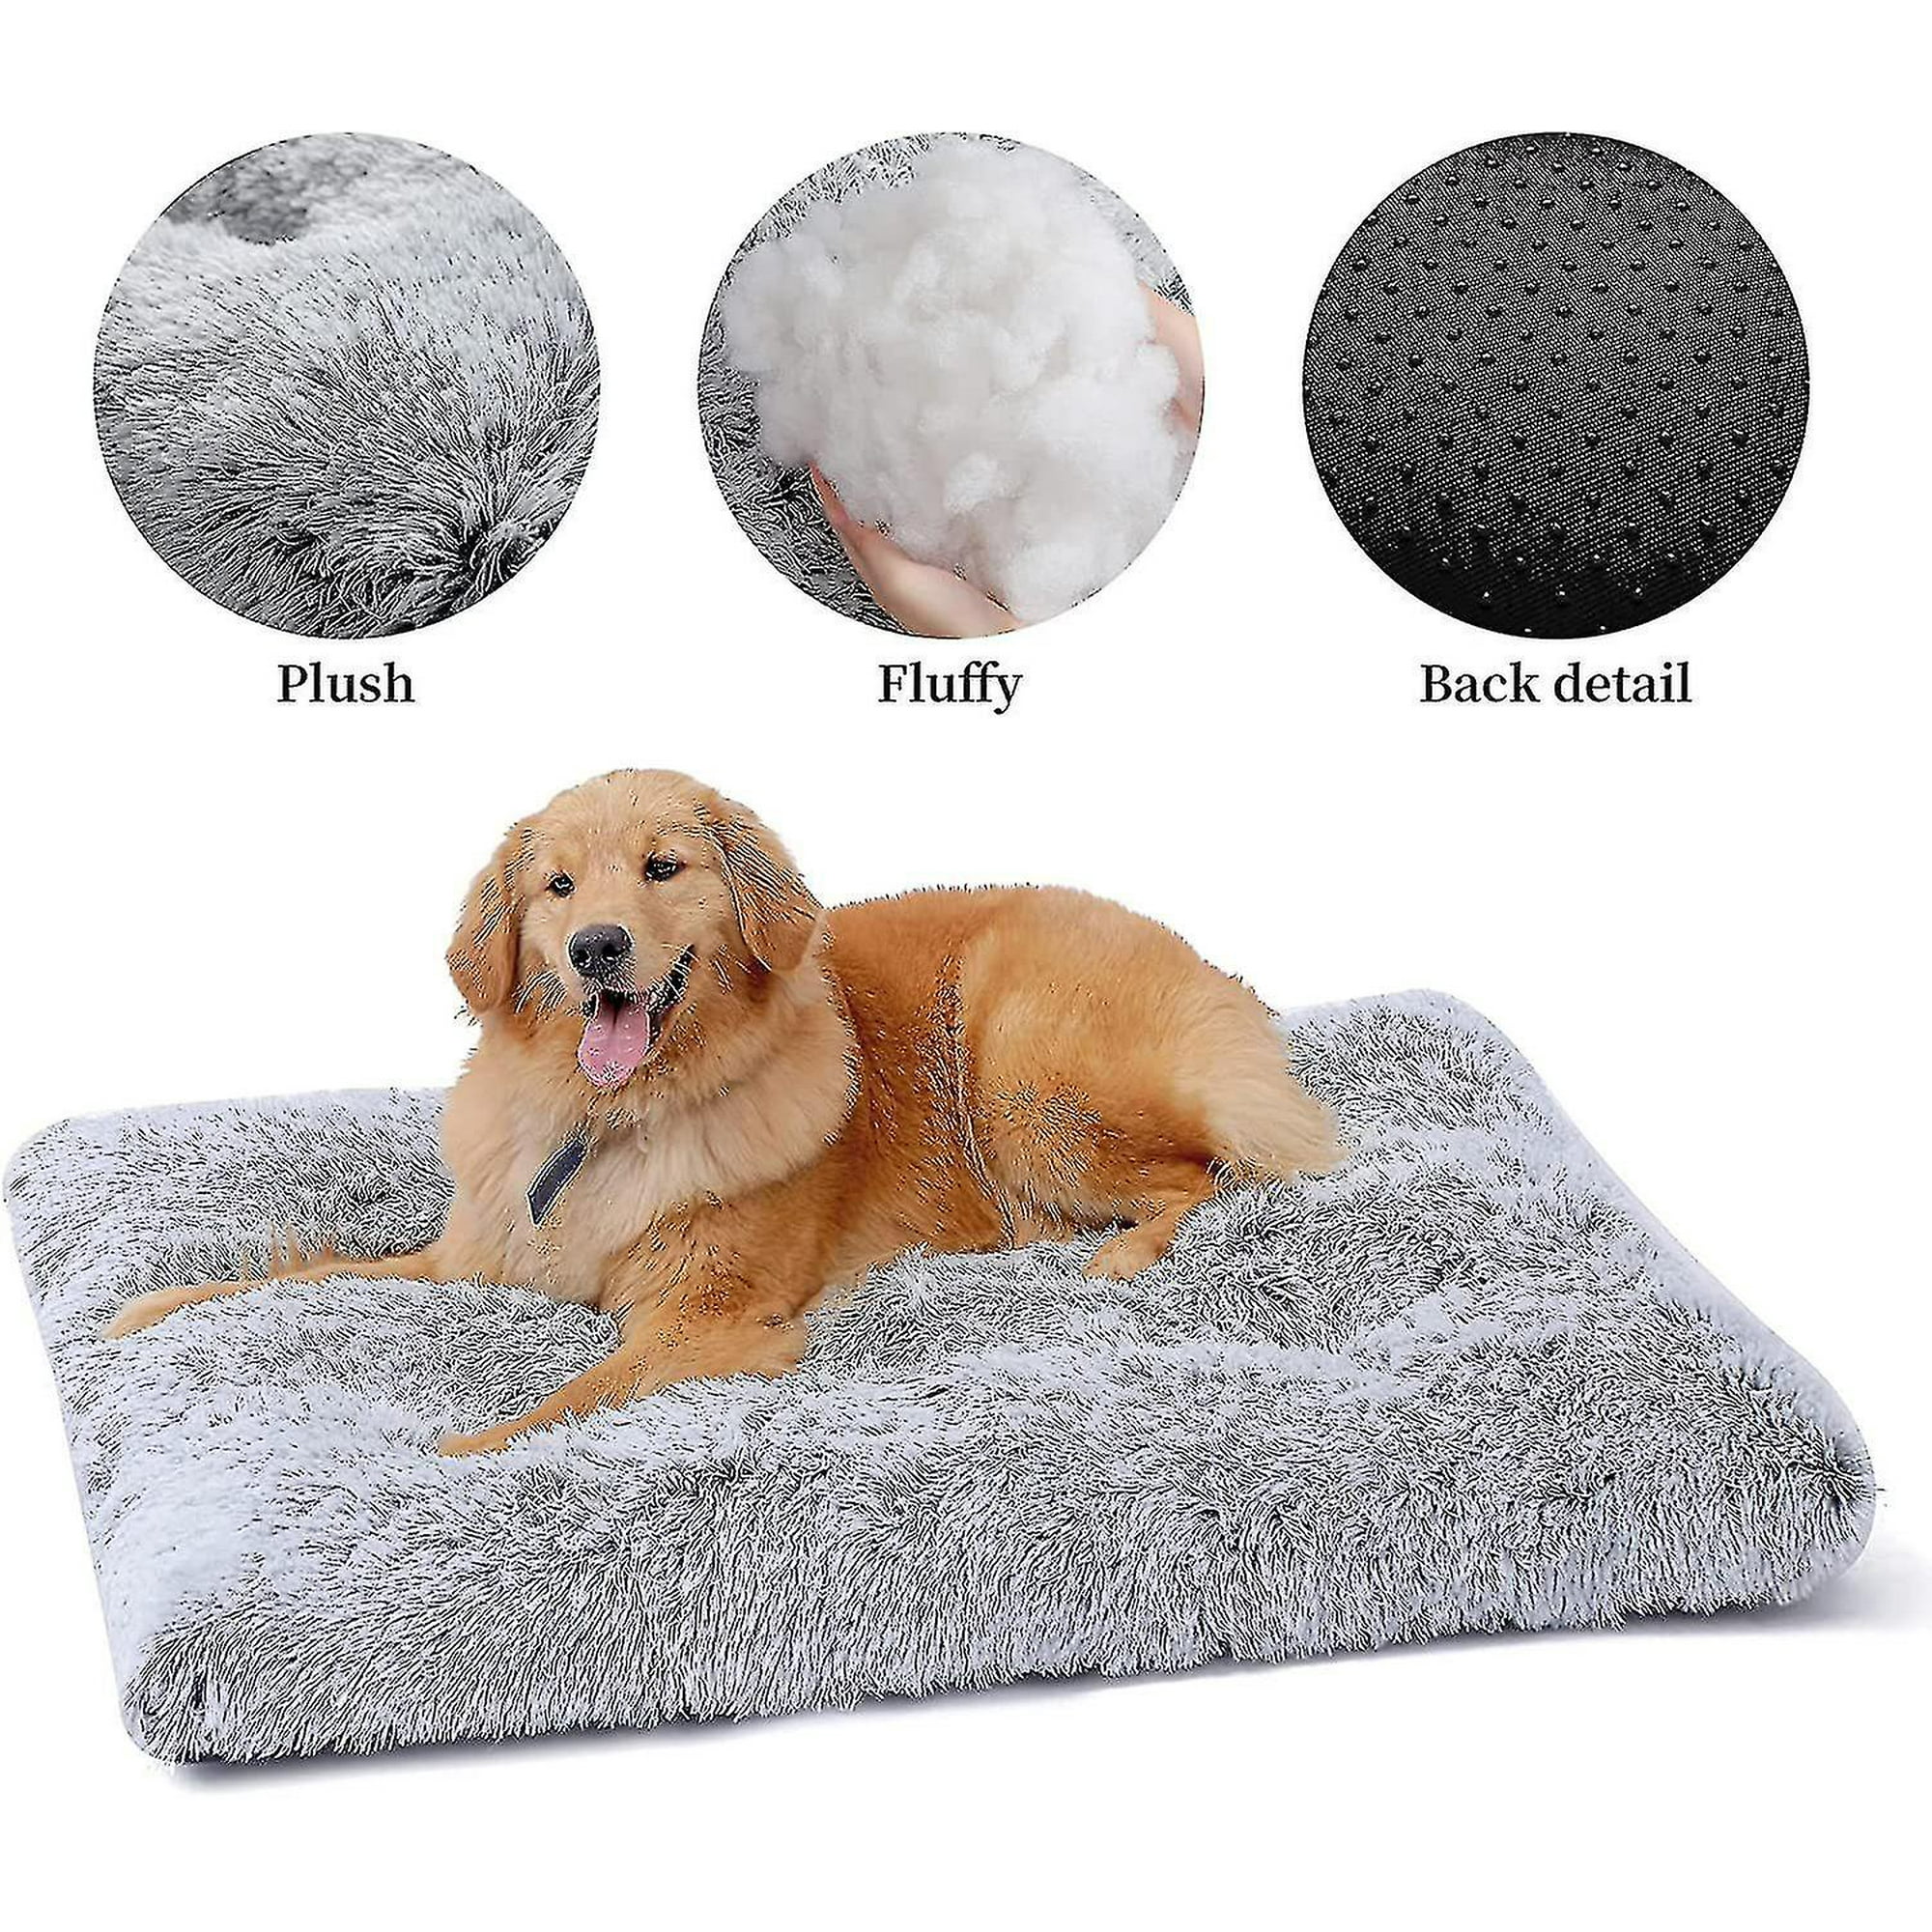 Tapete para cama de perro (24 x 18 pulgadas), almohadilla de felpa suave,  lavable a máquina, tapete para dormir para perro con parte inferior